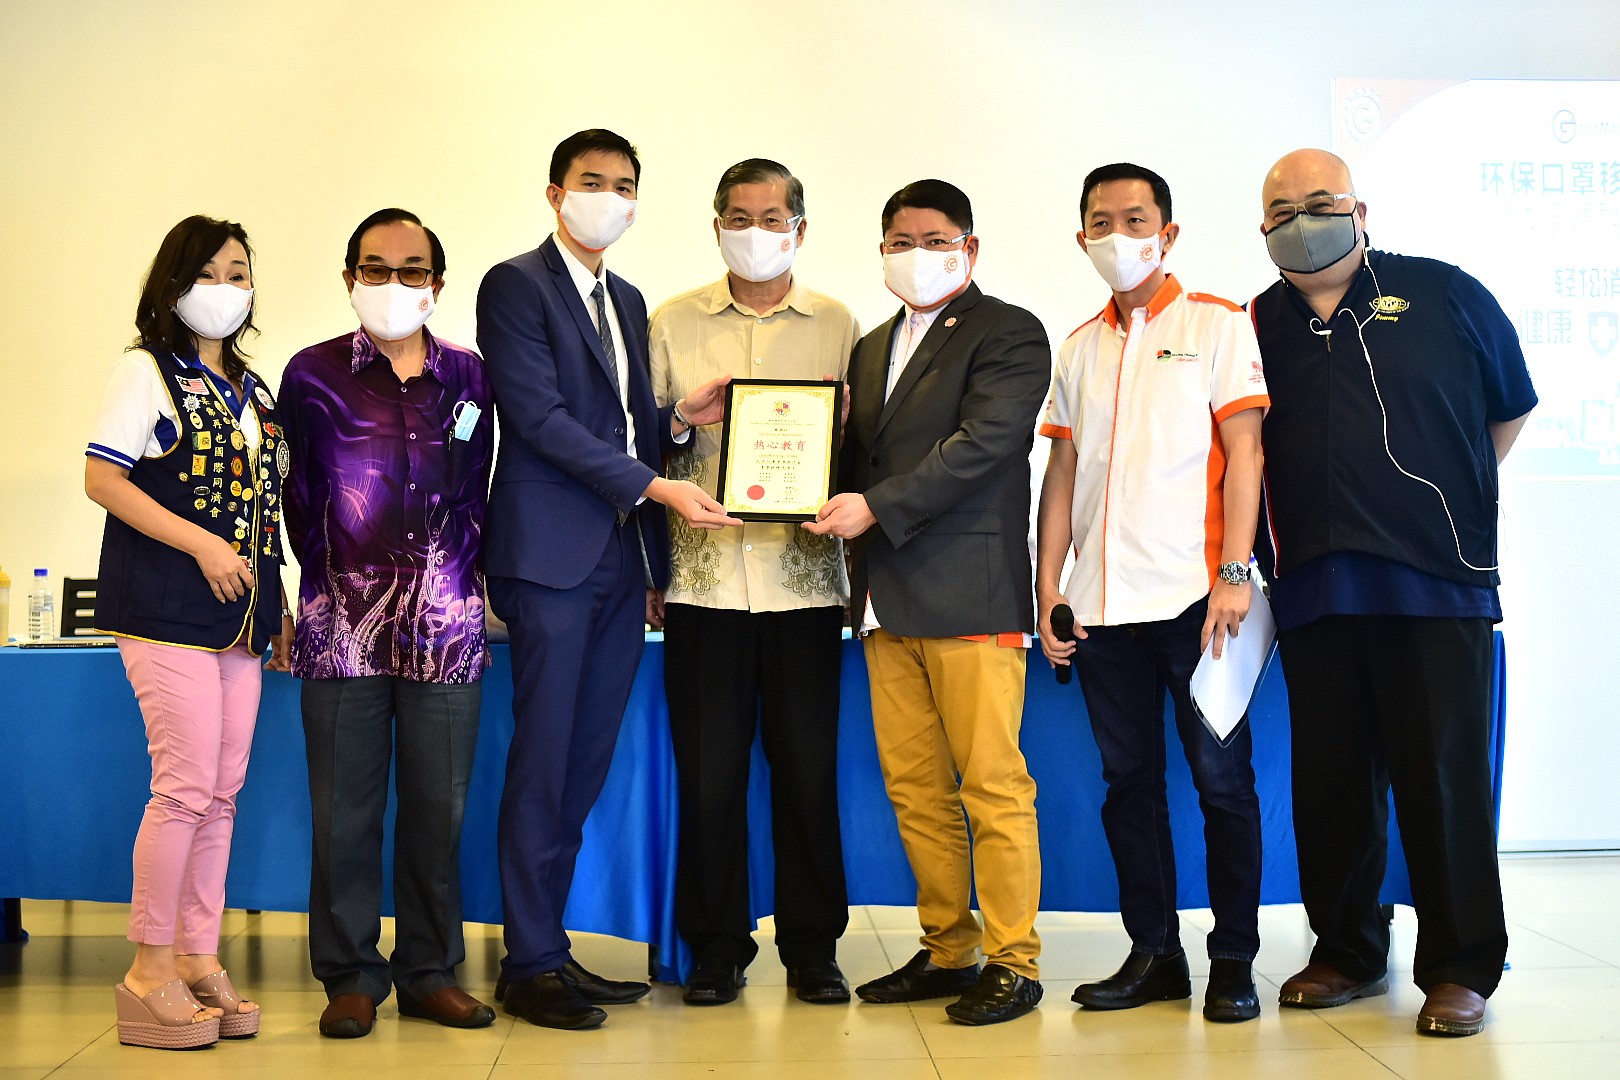 赠送环保口罩移交仪式 Reusable Mask Distribution Ceremony - Johor 15.08.2020 7